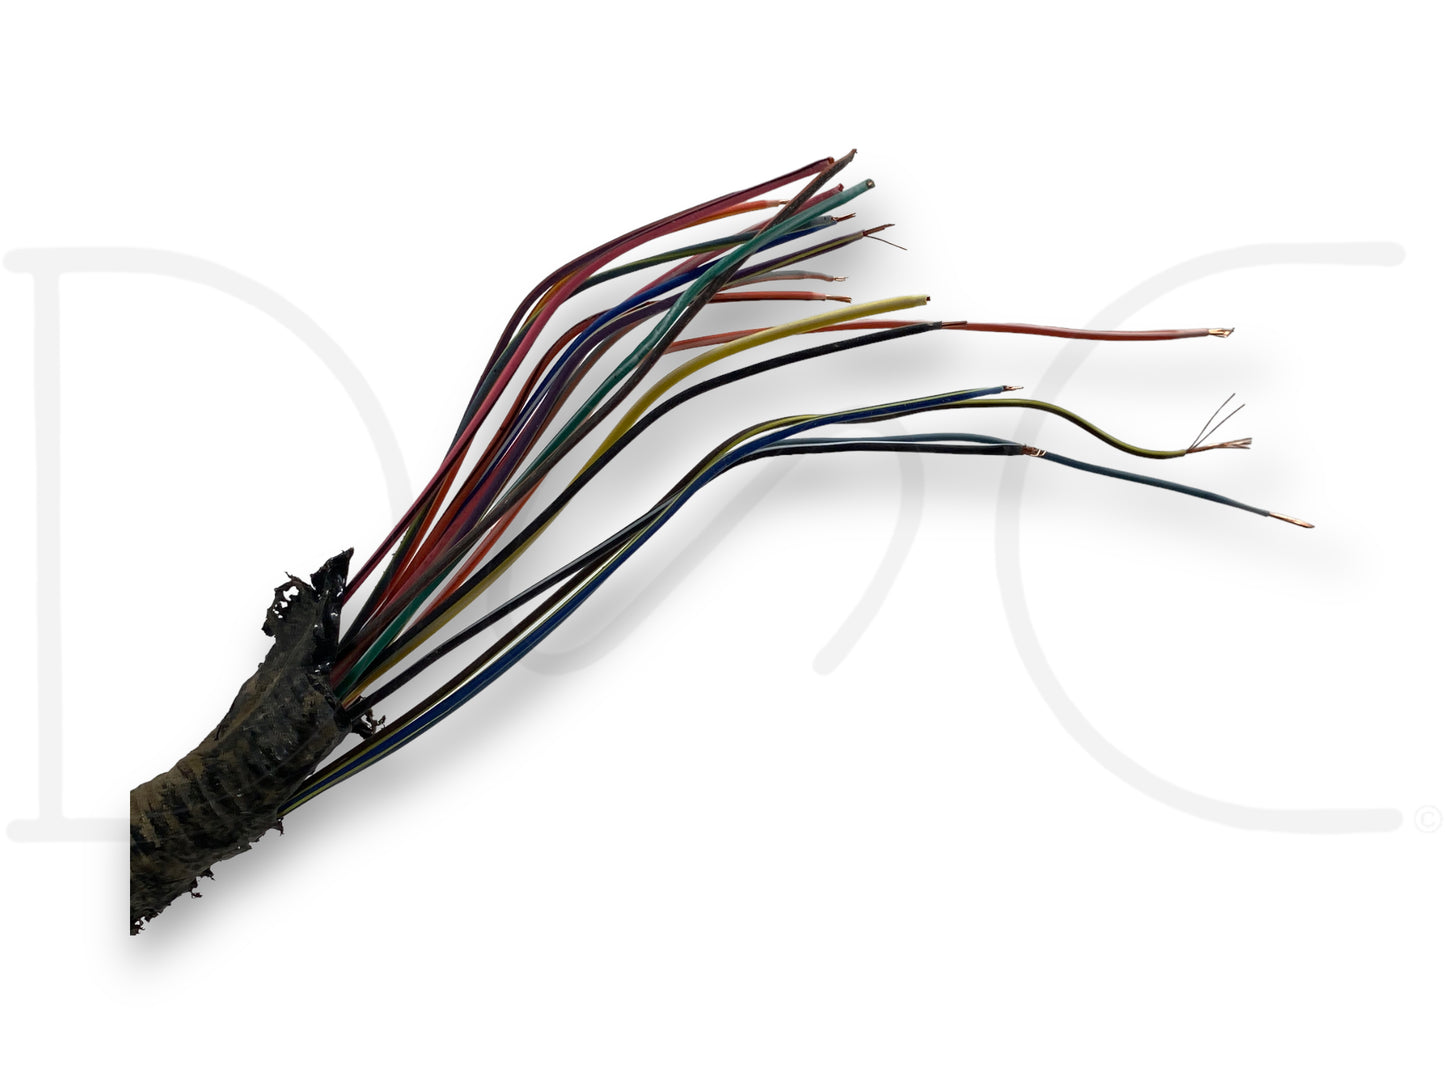 05-07 Ford F250 F350 6.0 6.0L 5R110 Transmission Wiring Harness Pigtail PCM Plug